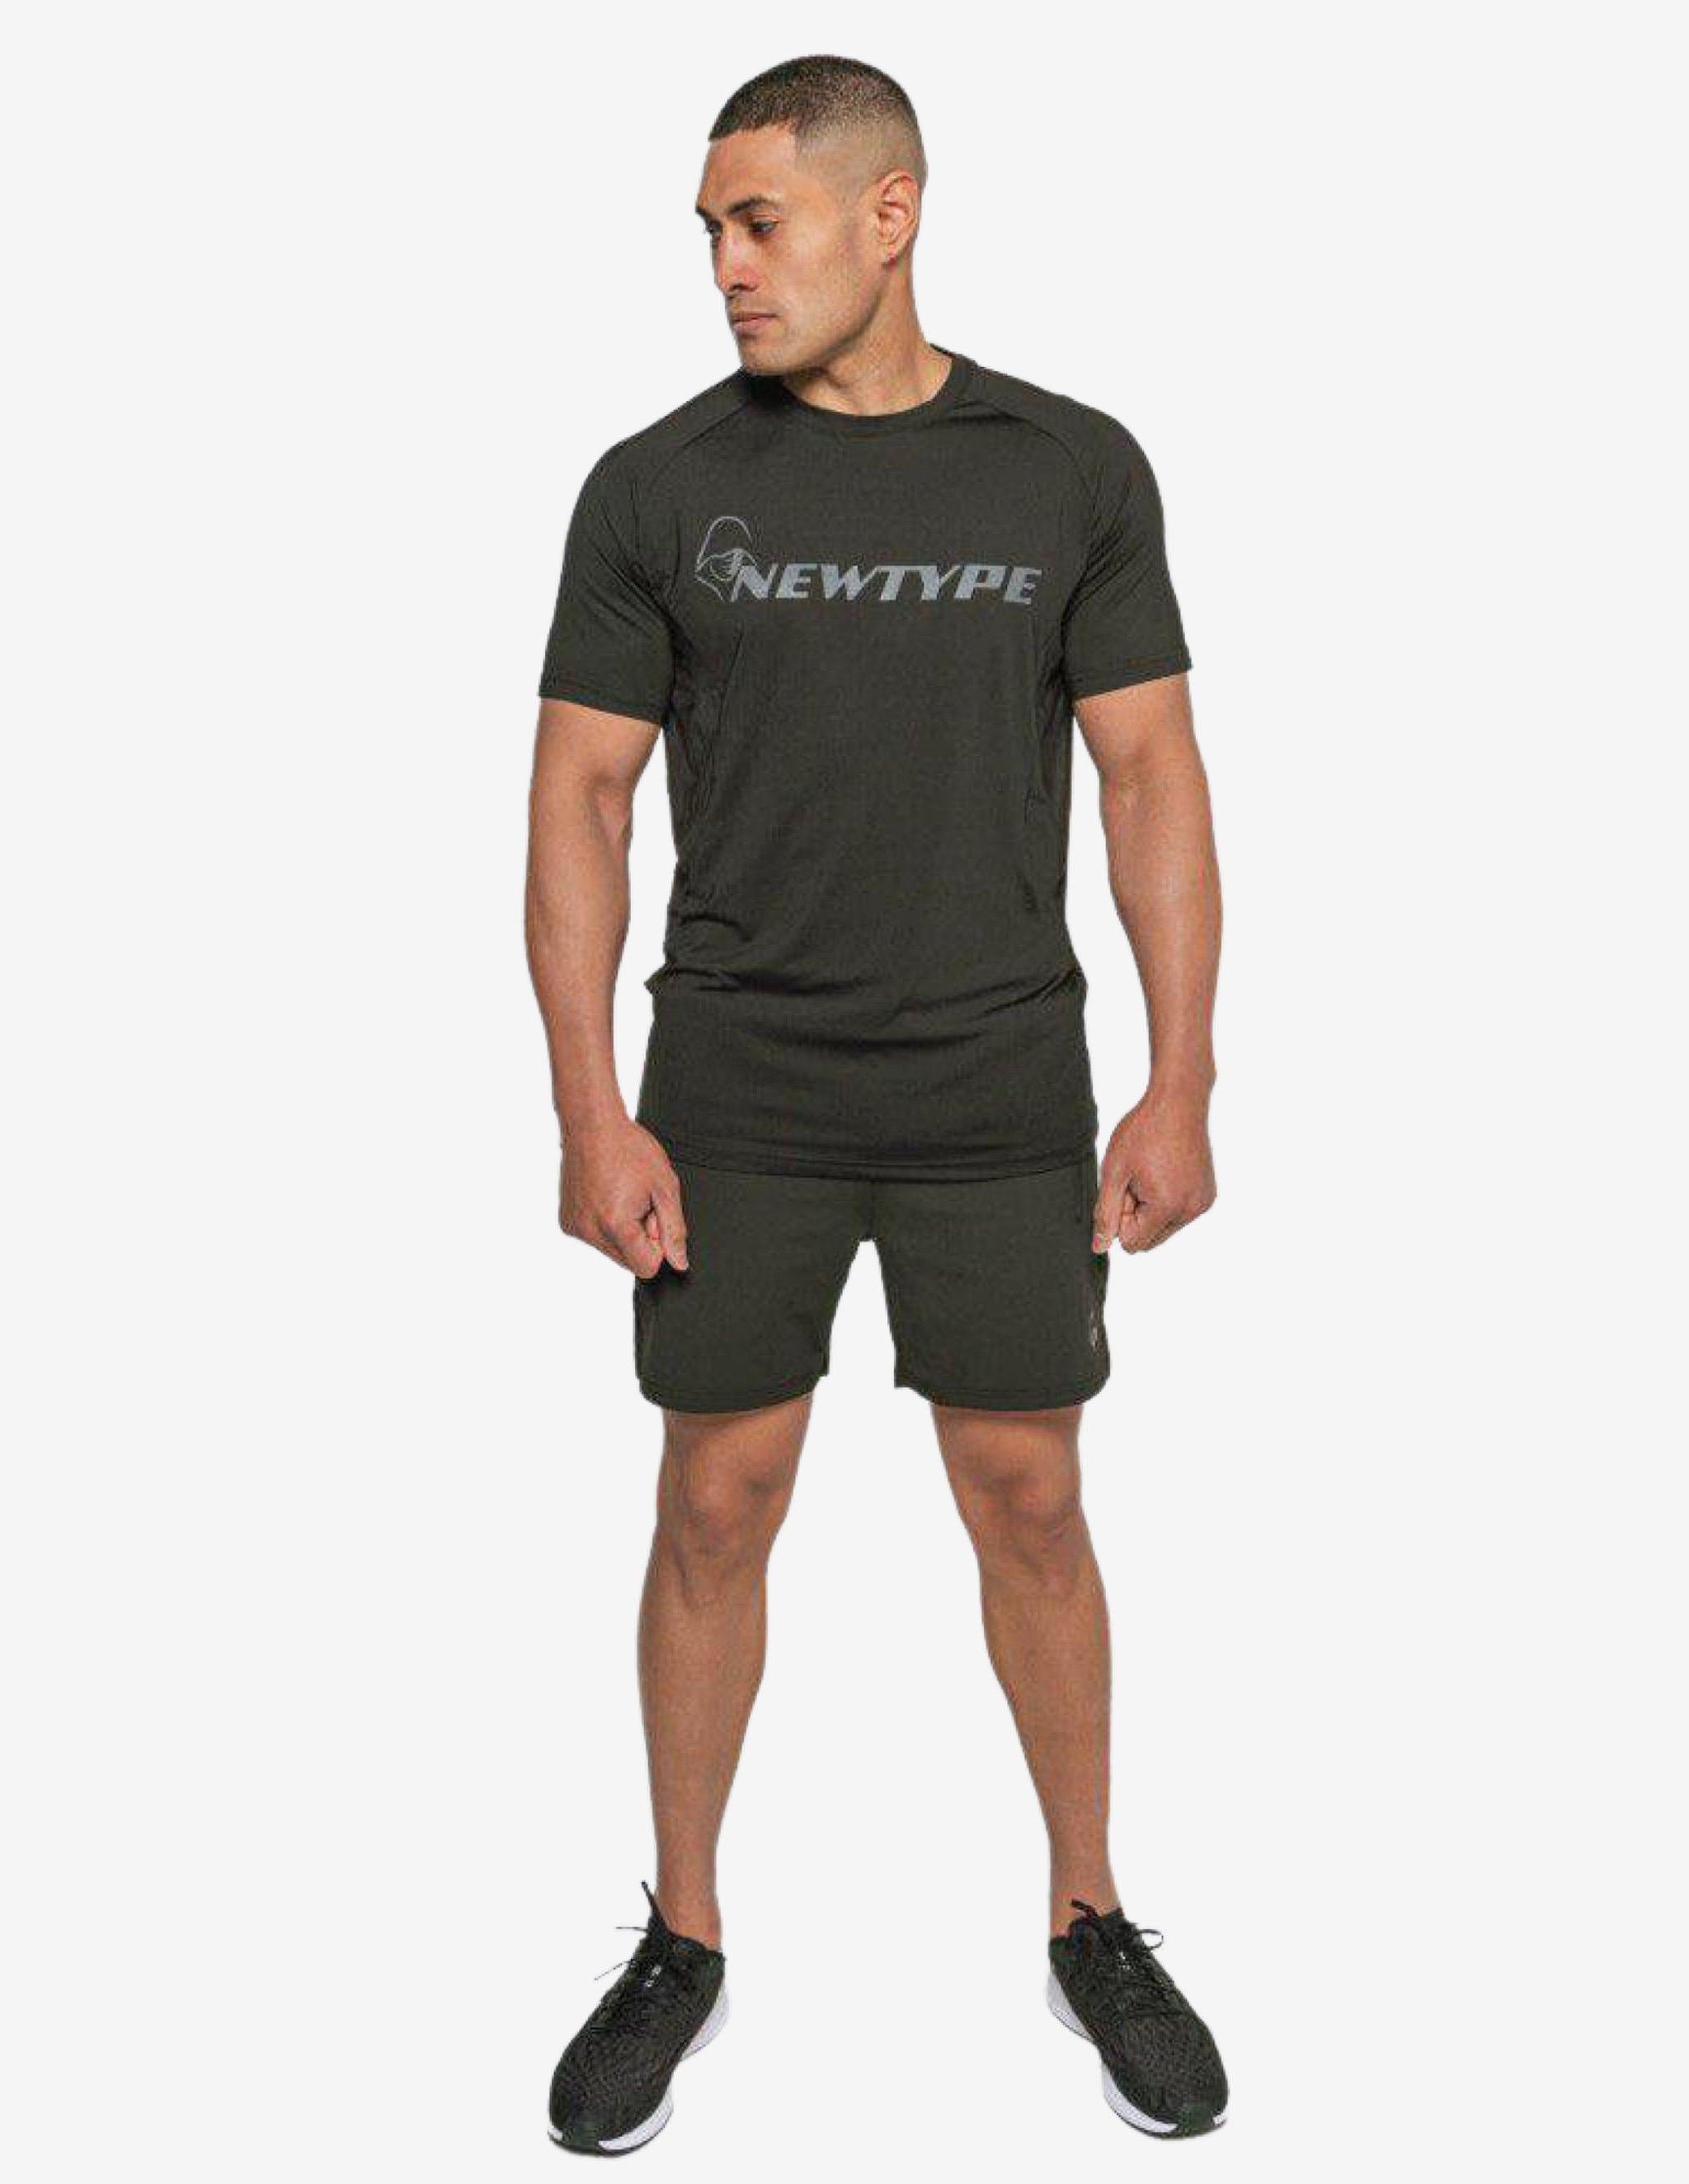 Sidewinder Tee - Black-T-shirt Man-NEWTYPE-Guru Muscle